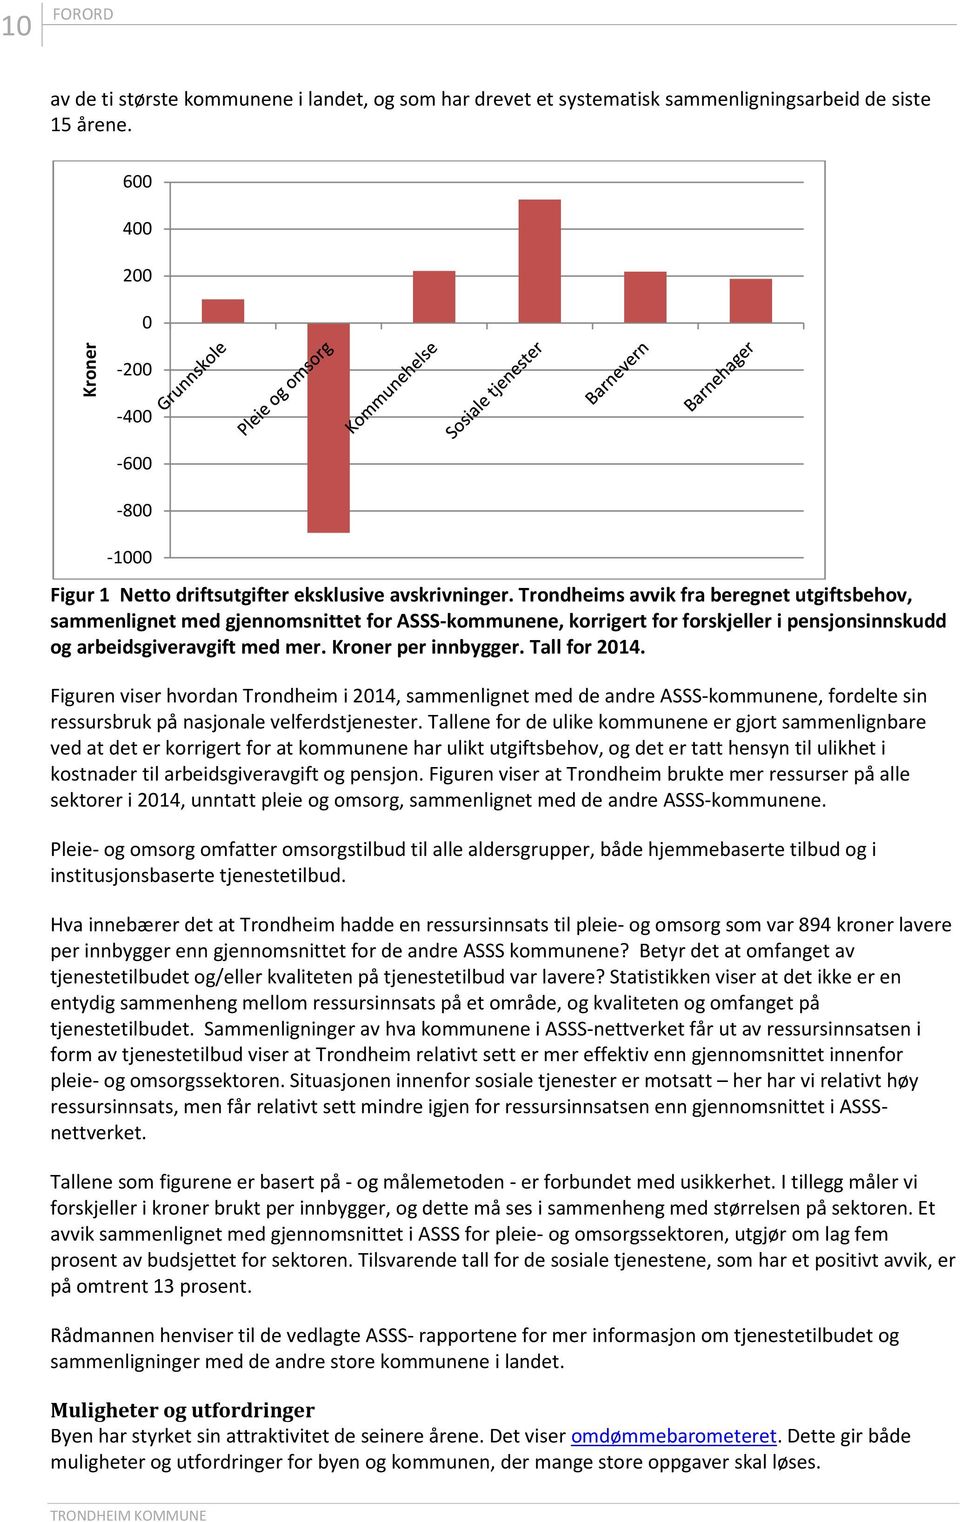 Trondheims avvik fra beregnet utgiftsbehov, sammenlignet med gjennomsnittet for ASSS-kommunene, korrigert for forskjeller i pensjonsinnskudd og arbeidsgiveravgift med mer. Kroner per innbygger.